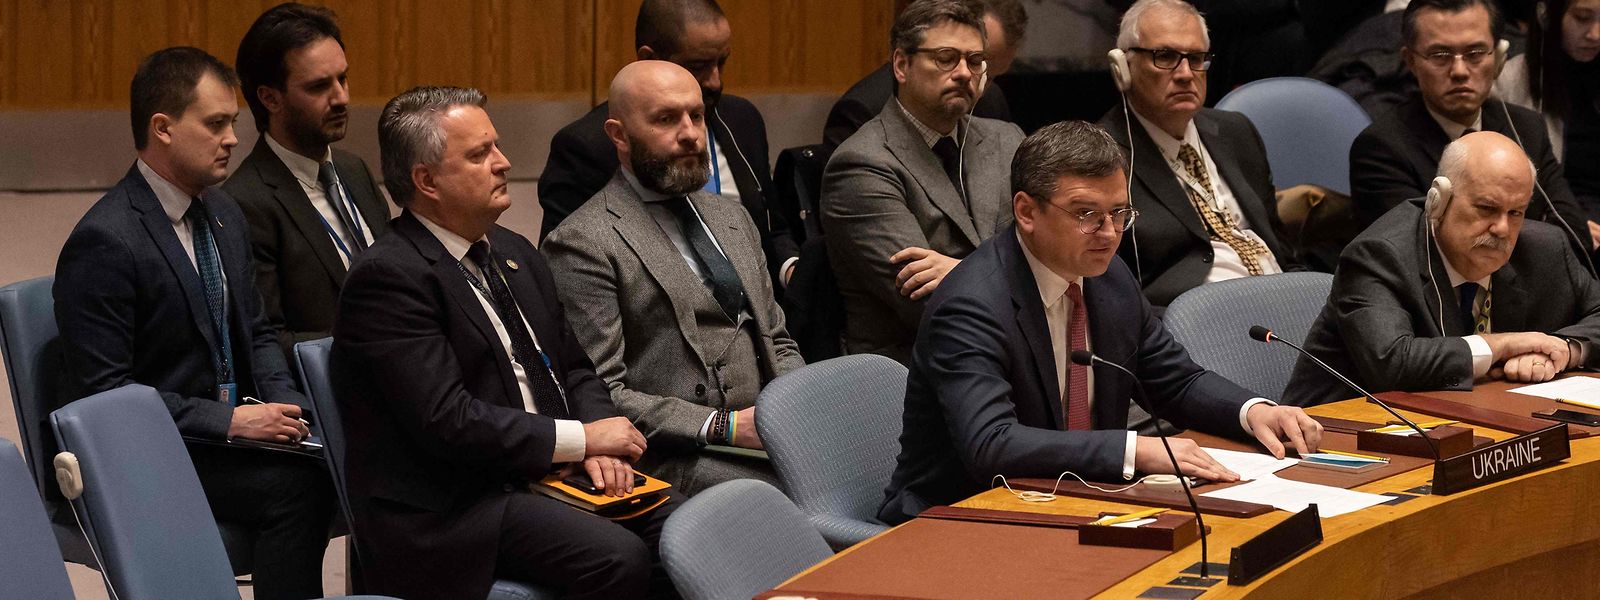 Der ukrainische Außenminister Dmytro Kuleba (2.v.r.) forderte erneut die Einrichtung eines Sondertribunals mit besonderer Zuständigkeit für das Verbrechen eines Angriffskrieges 